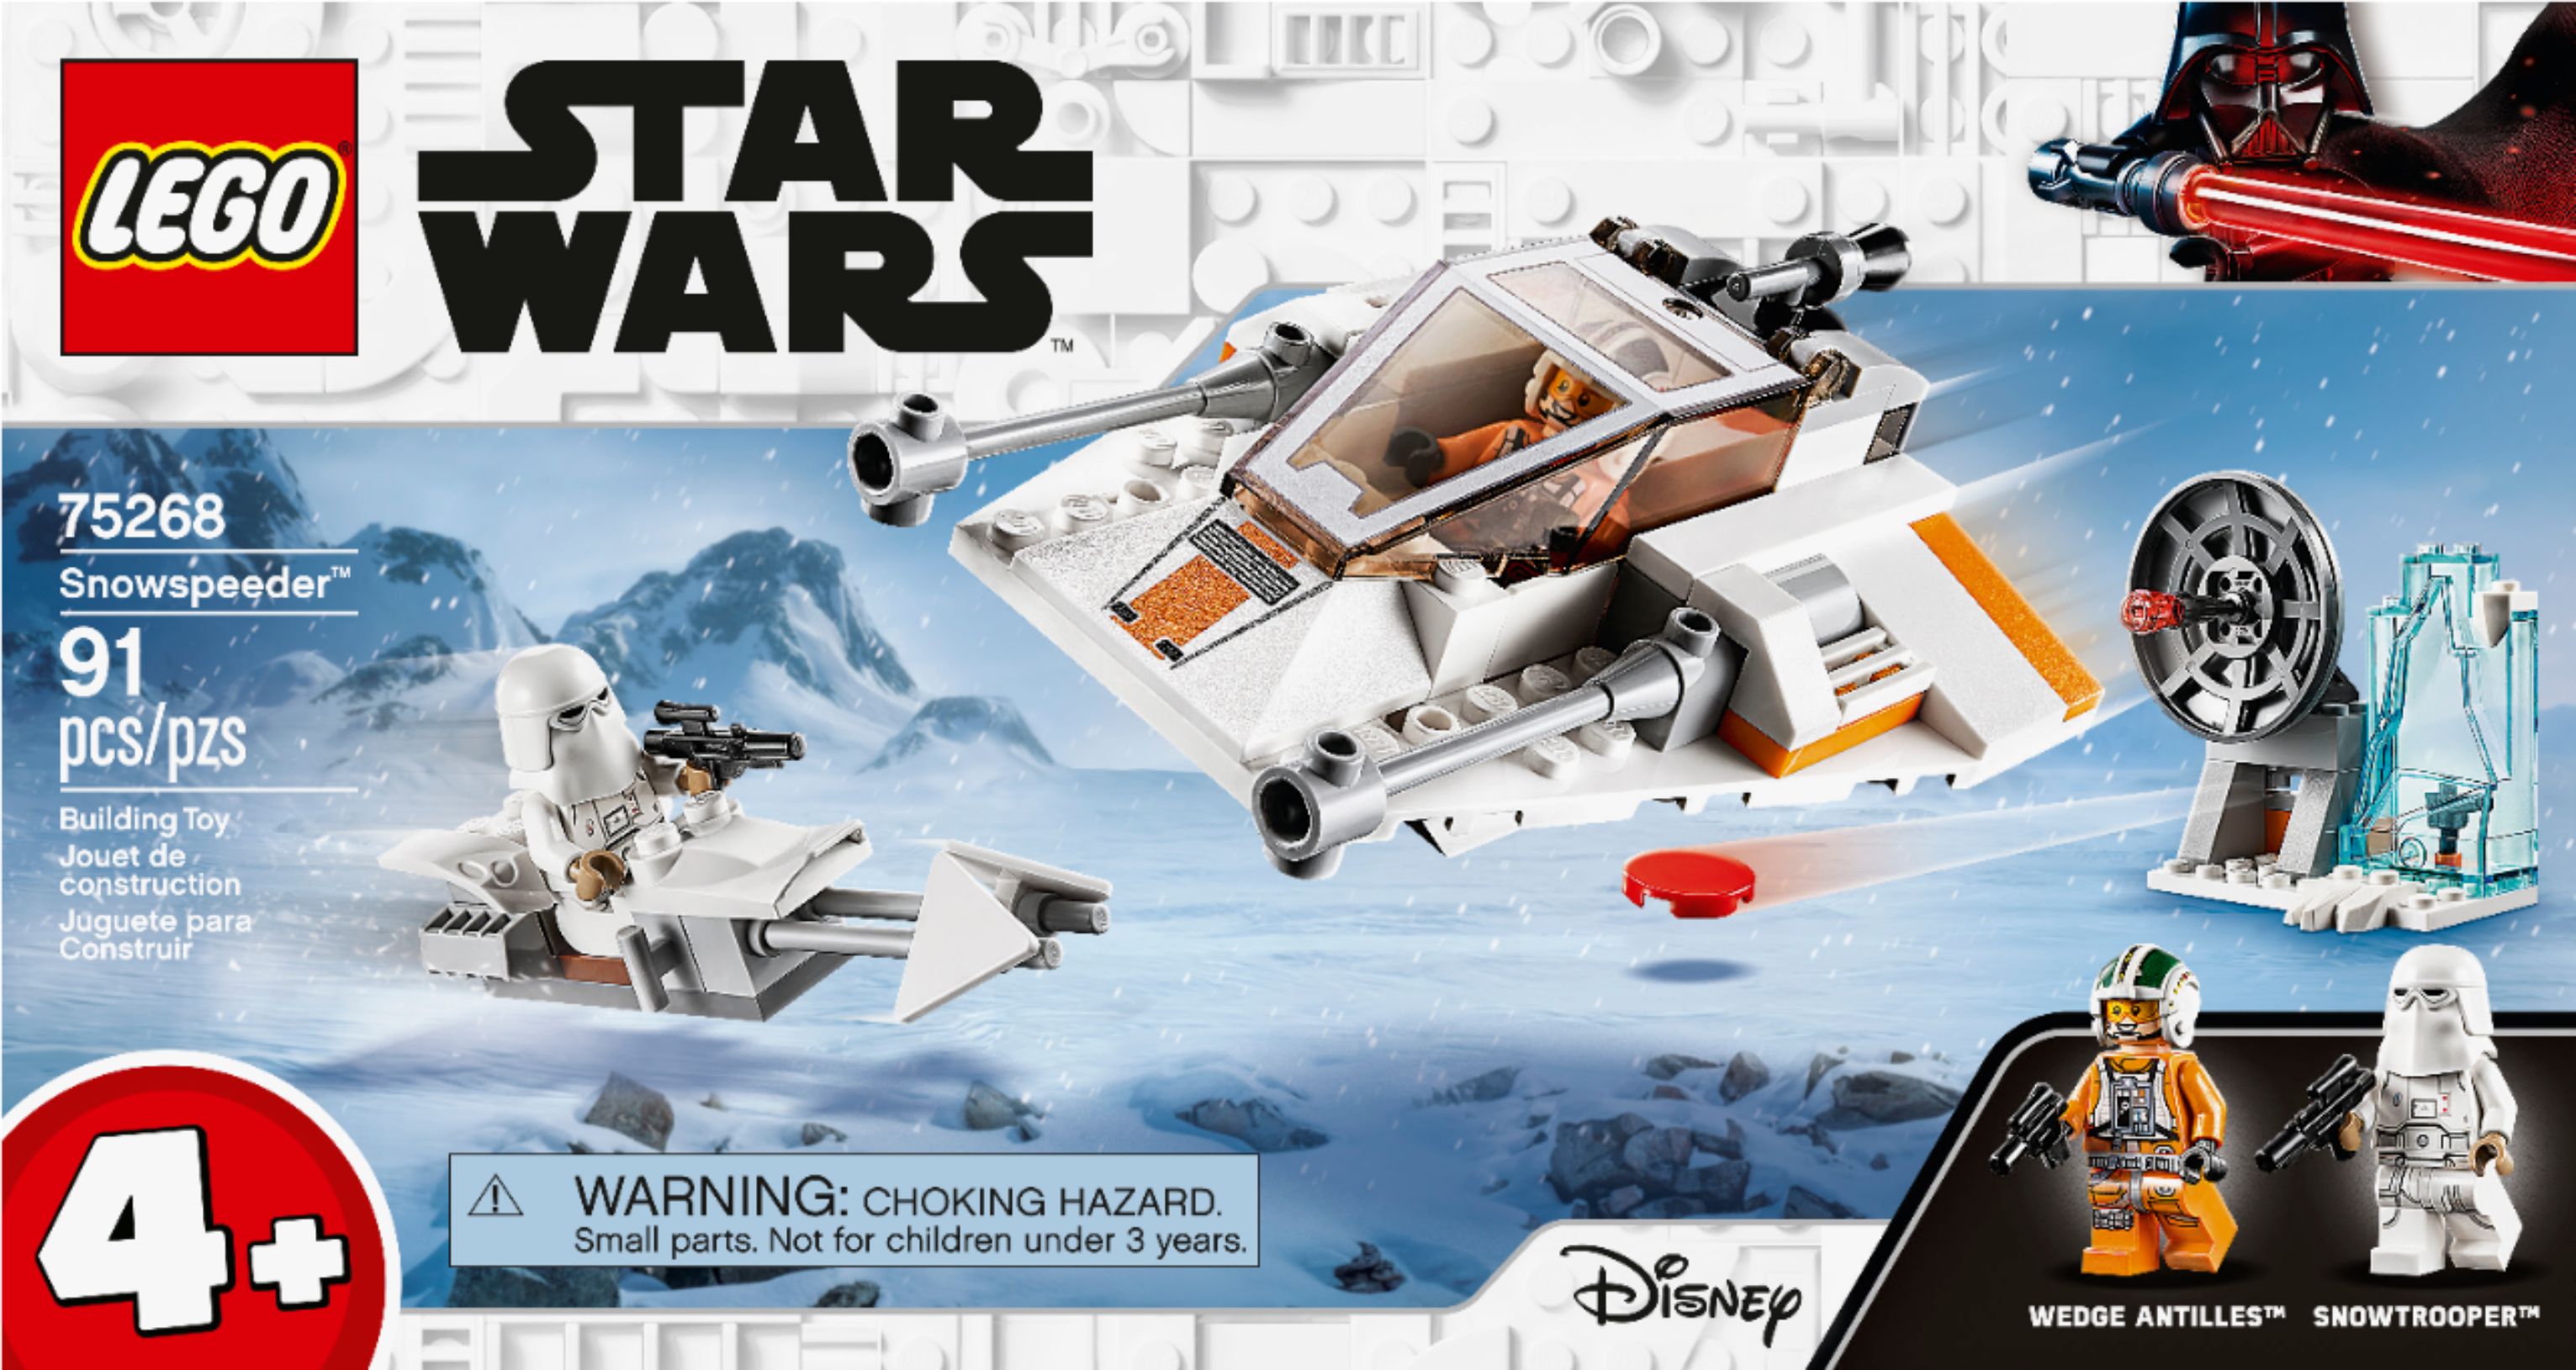 LEGO Star Wars Snowspeeder 75268 6288996 -